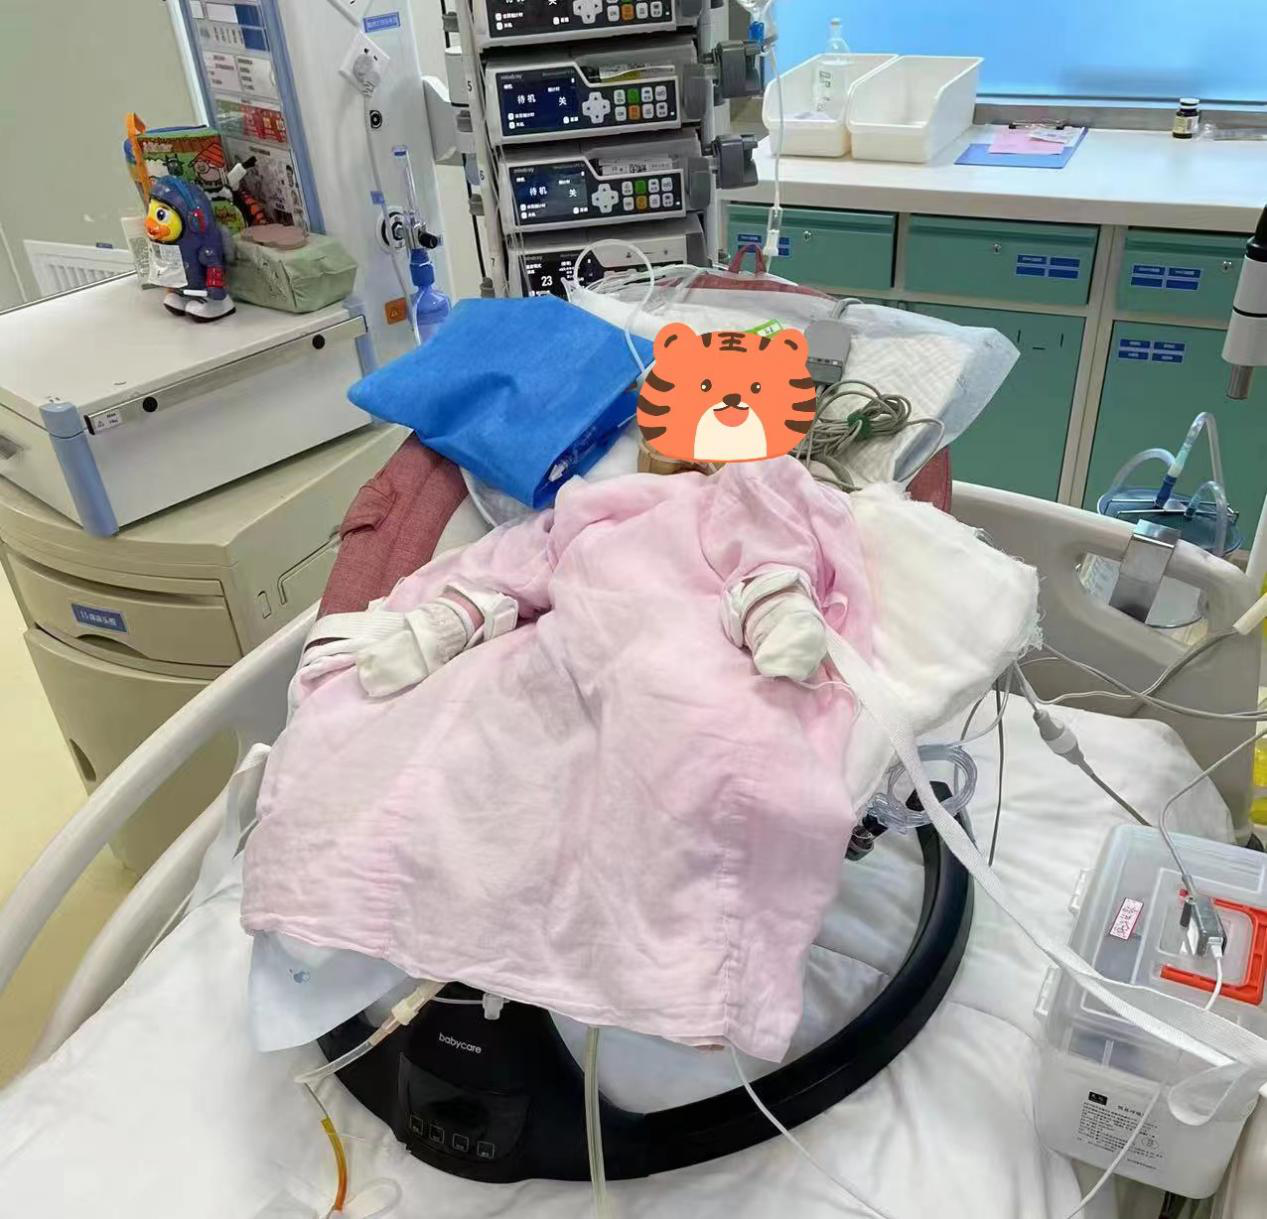 6月龄外孙女患先天性胆道闭锁  52岁外公“割”肝救治